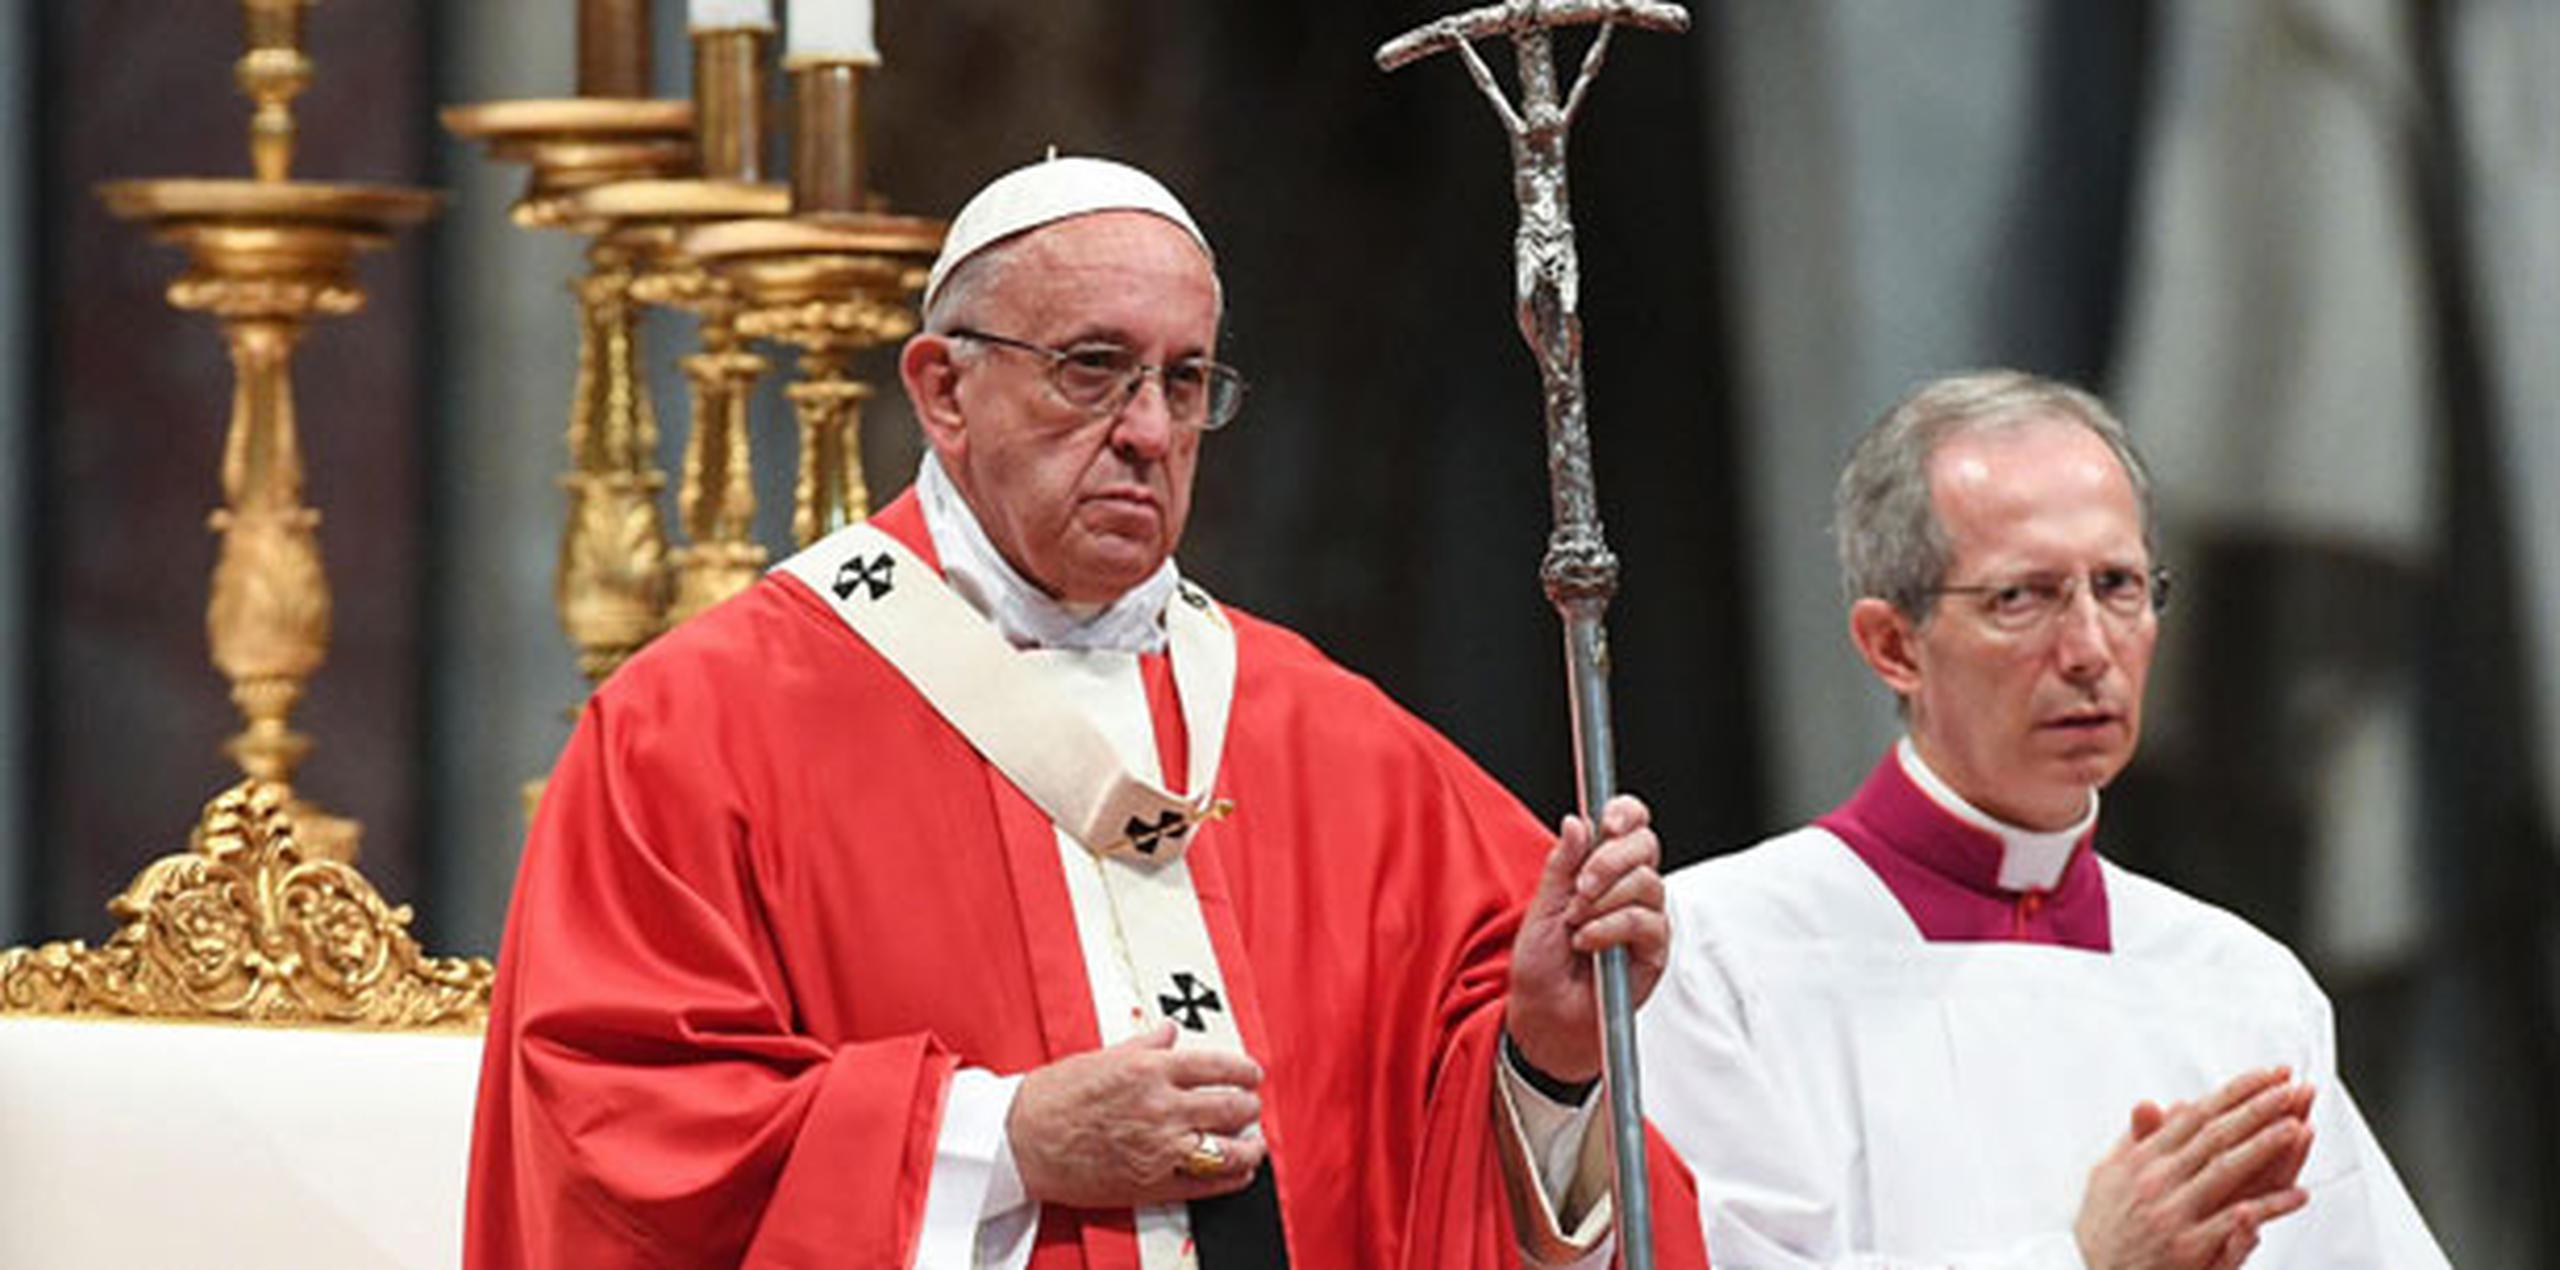 El pontífice animó a los fieles a rezar "por las víctimas, por sus familiares y por el querido pueblo turco". (Agencia EFE)